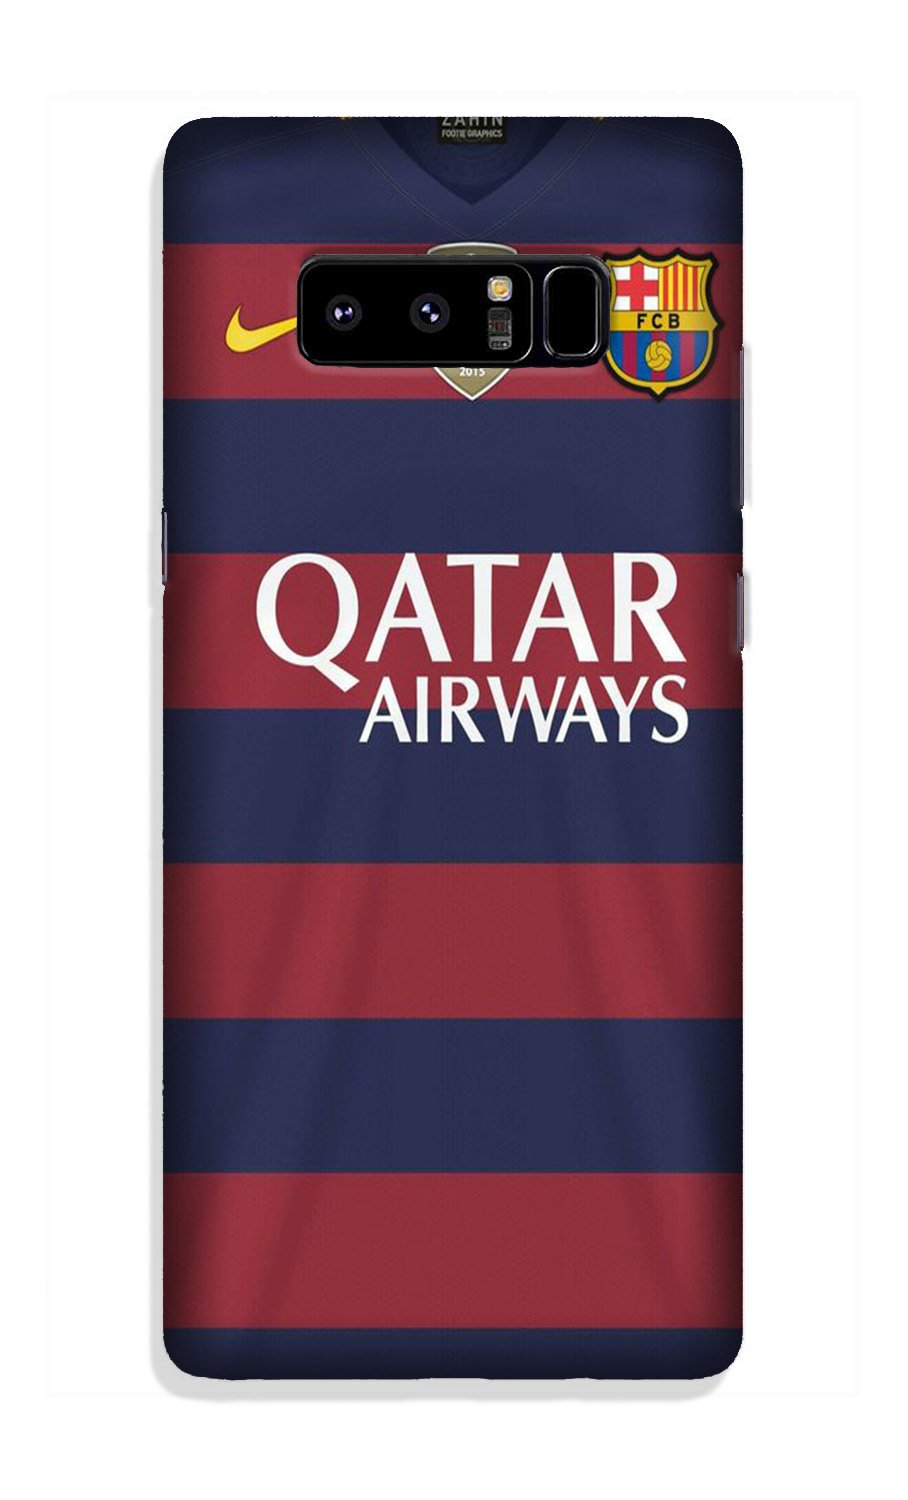 Qatar Airways Case for Galaxy Note 8(Design - 160)